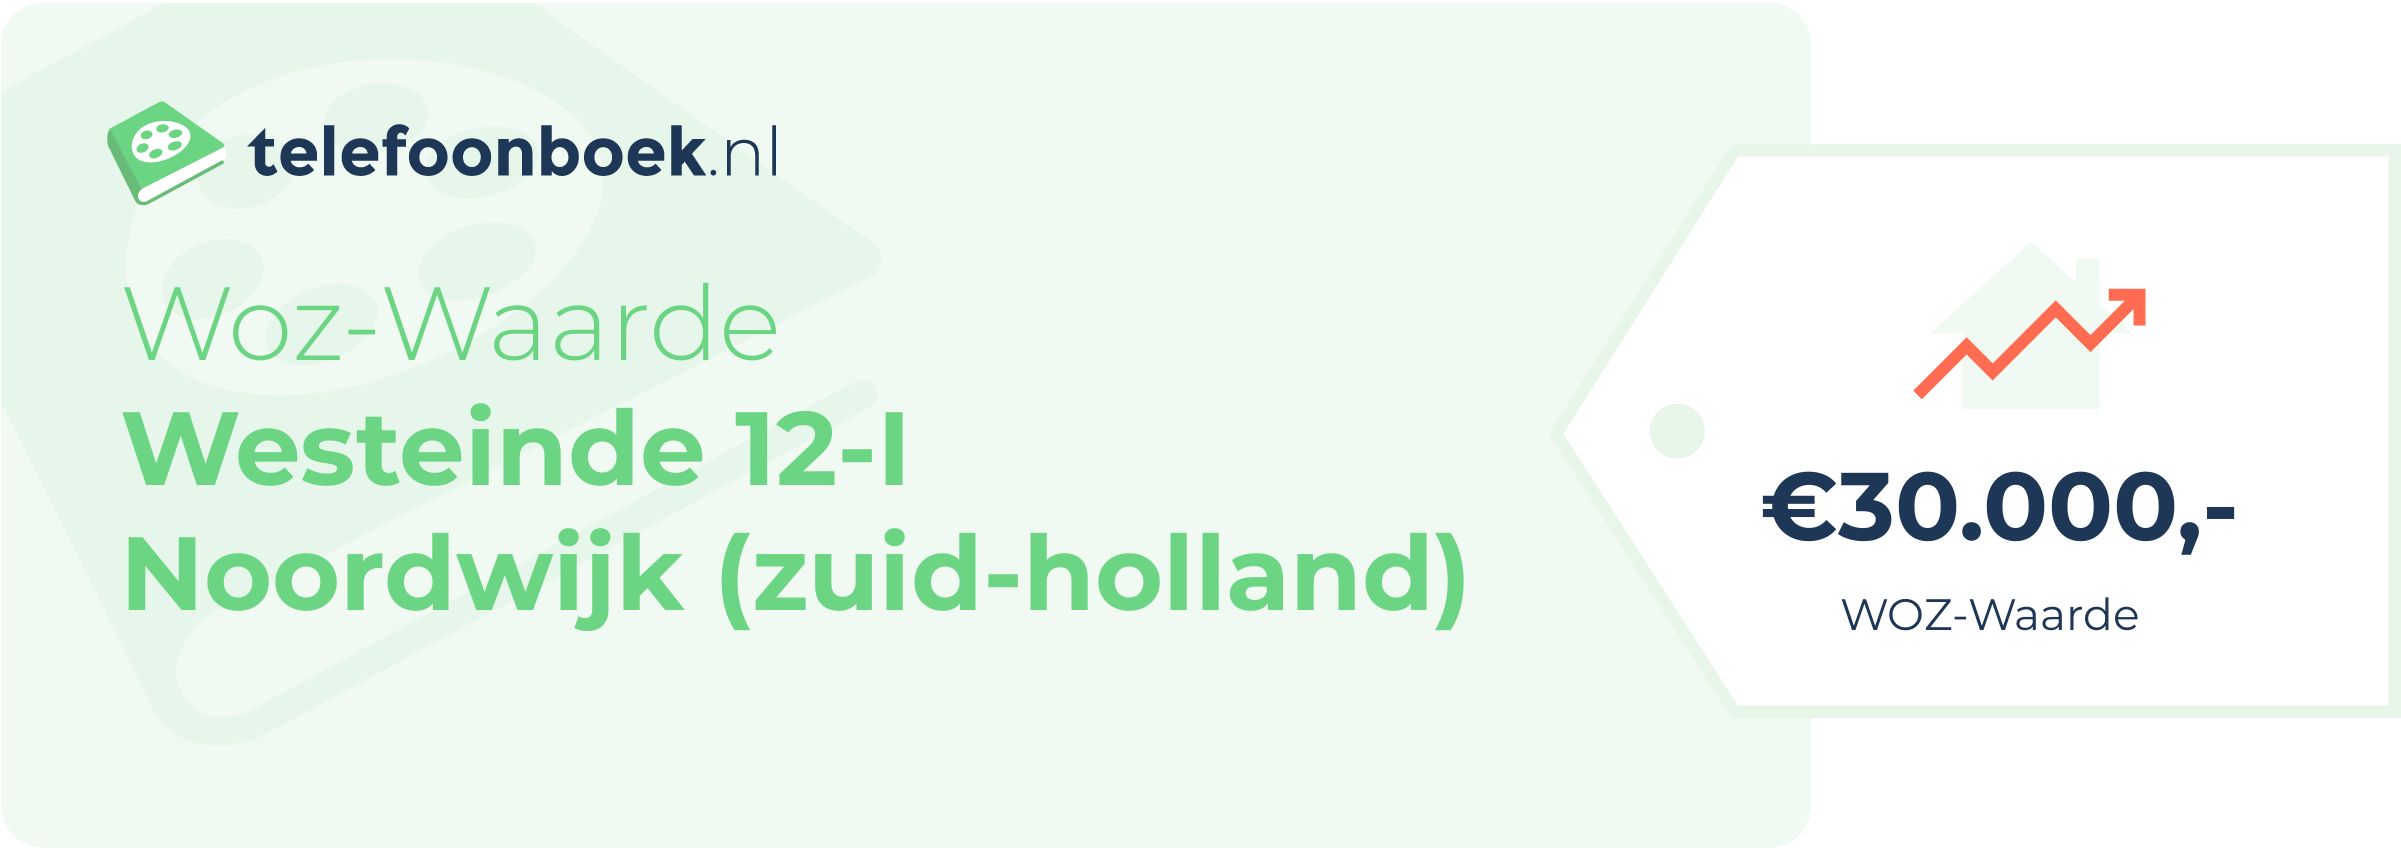 WOZ-waarde Westeinde 12-I Noordwijk (Zuid-Holland)